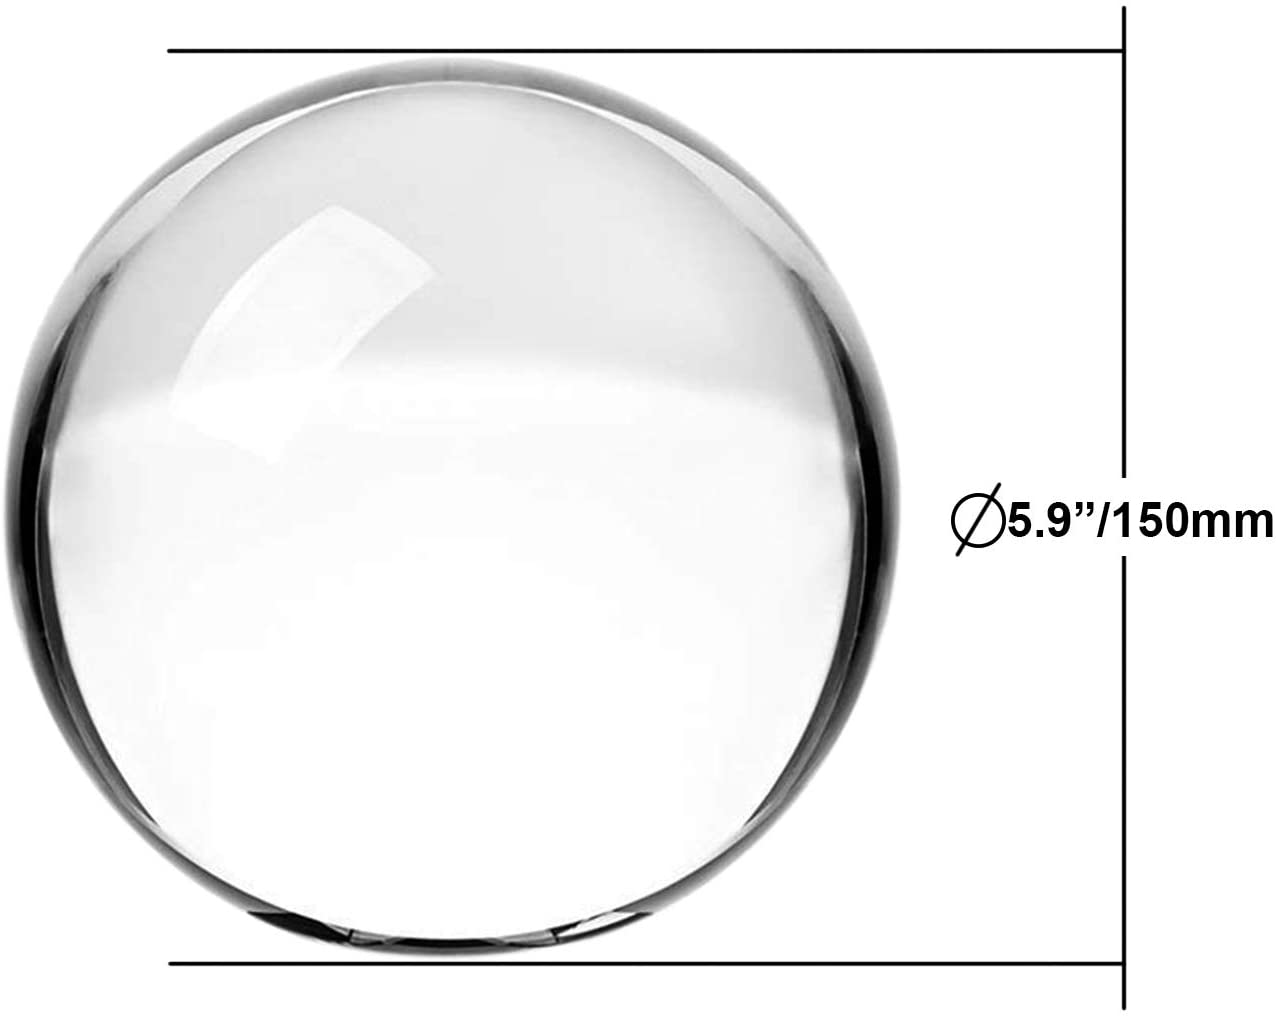 awagas Boule de cristal K9 de 150 mm - Boule de cristal artificiel - Boule  de cristal de guérison magique avec support en bois pour la méditation, la  divination, la guérison, la